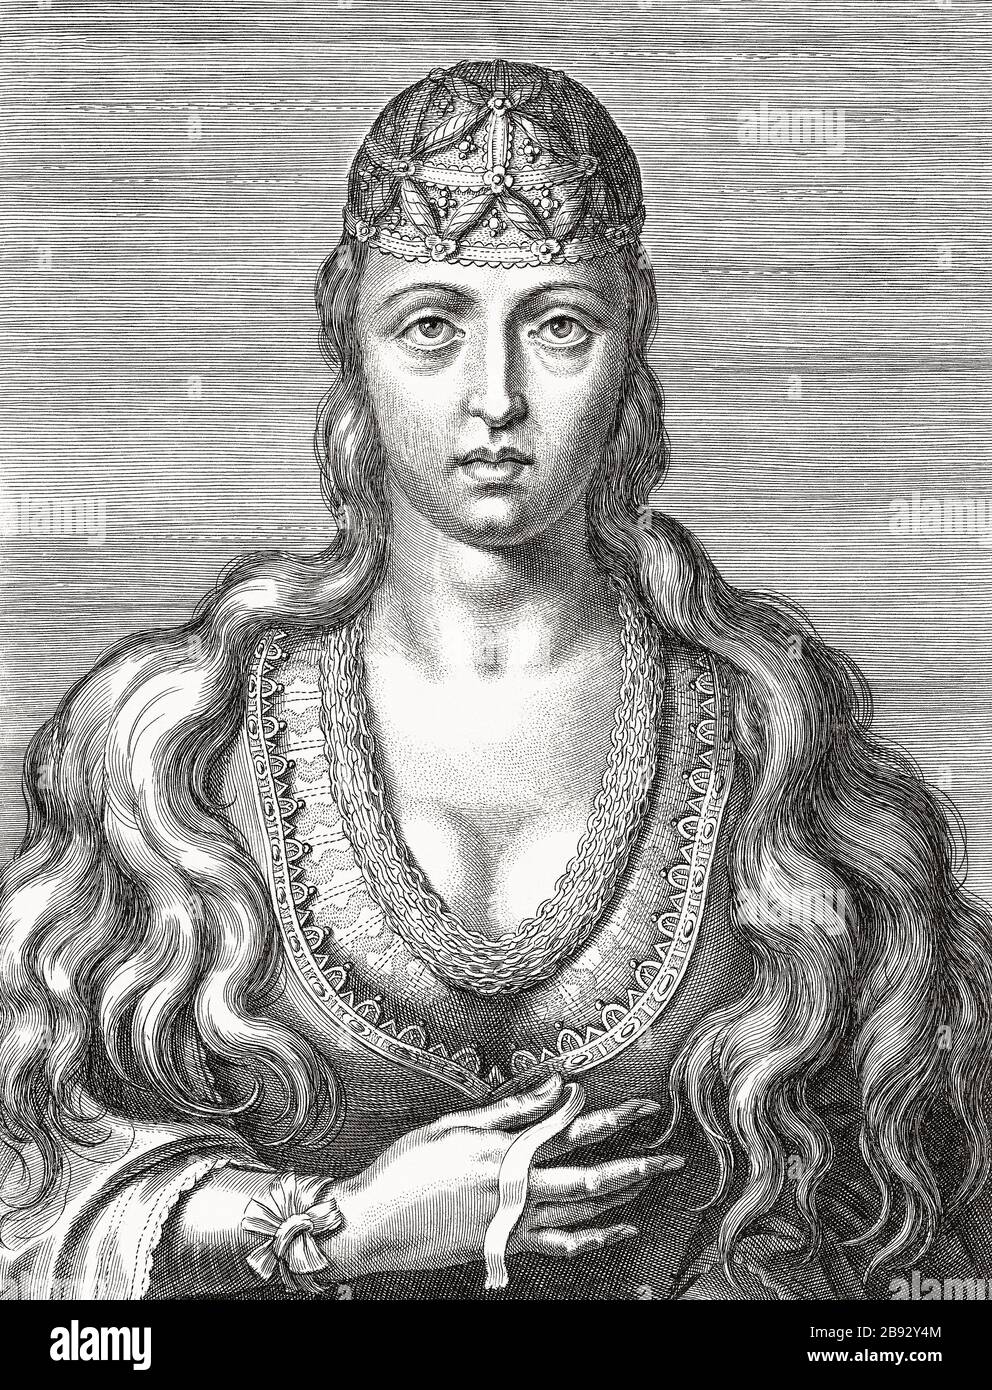 Prinzessin Joan von Portugal, 1452 - 1490. Sie war als Santa Joana Princesa bekannt und wurde 1693 seliggesprochen. Jahrhundert nach einem Gemälde eines unbekannten Künstlers aus dem 16. Jahrhundert. Stockfoto